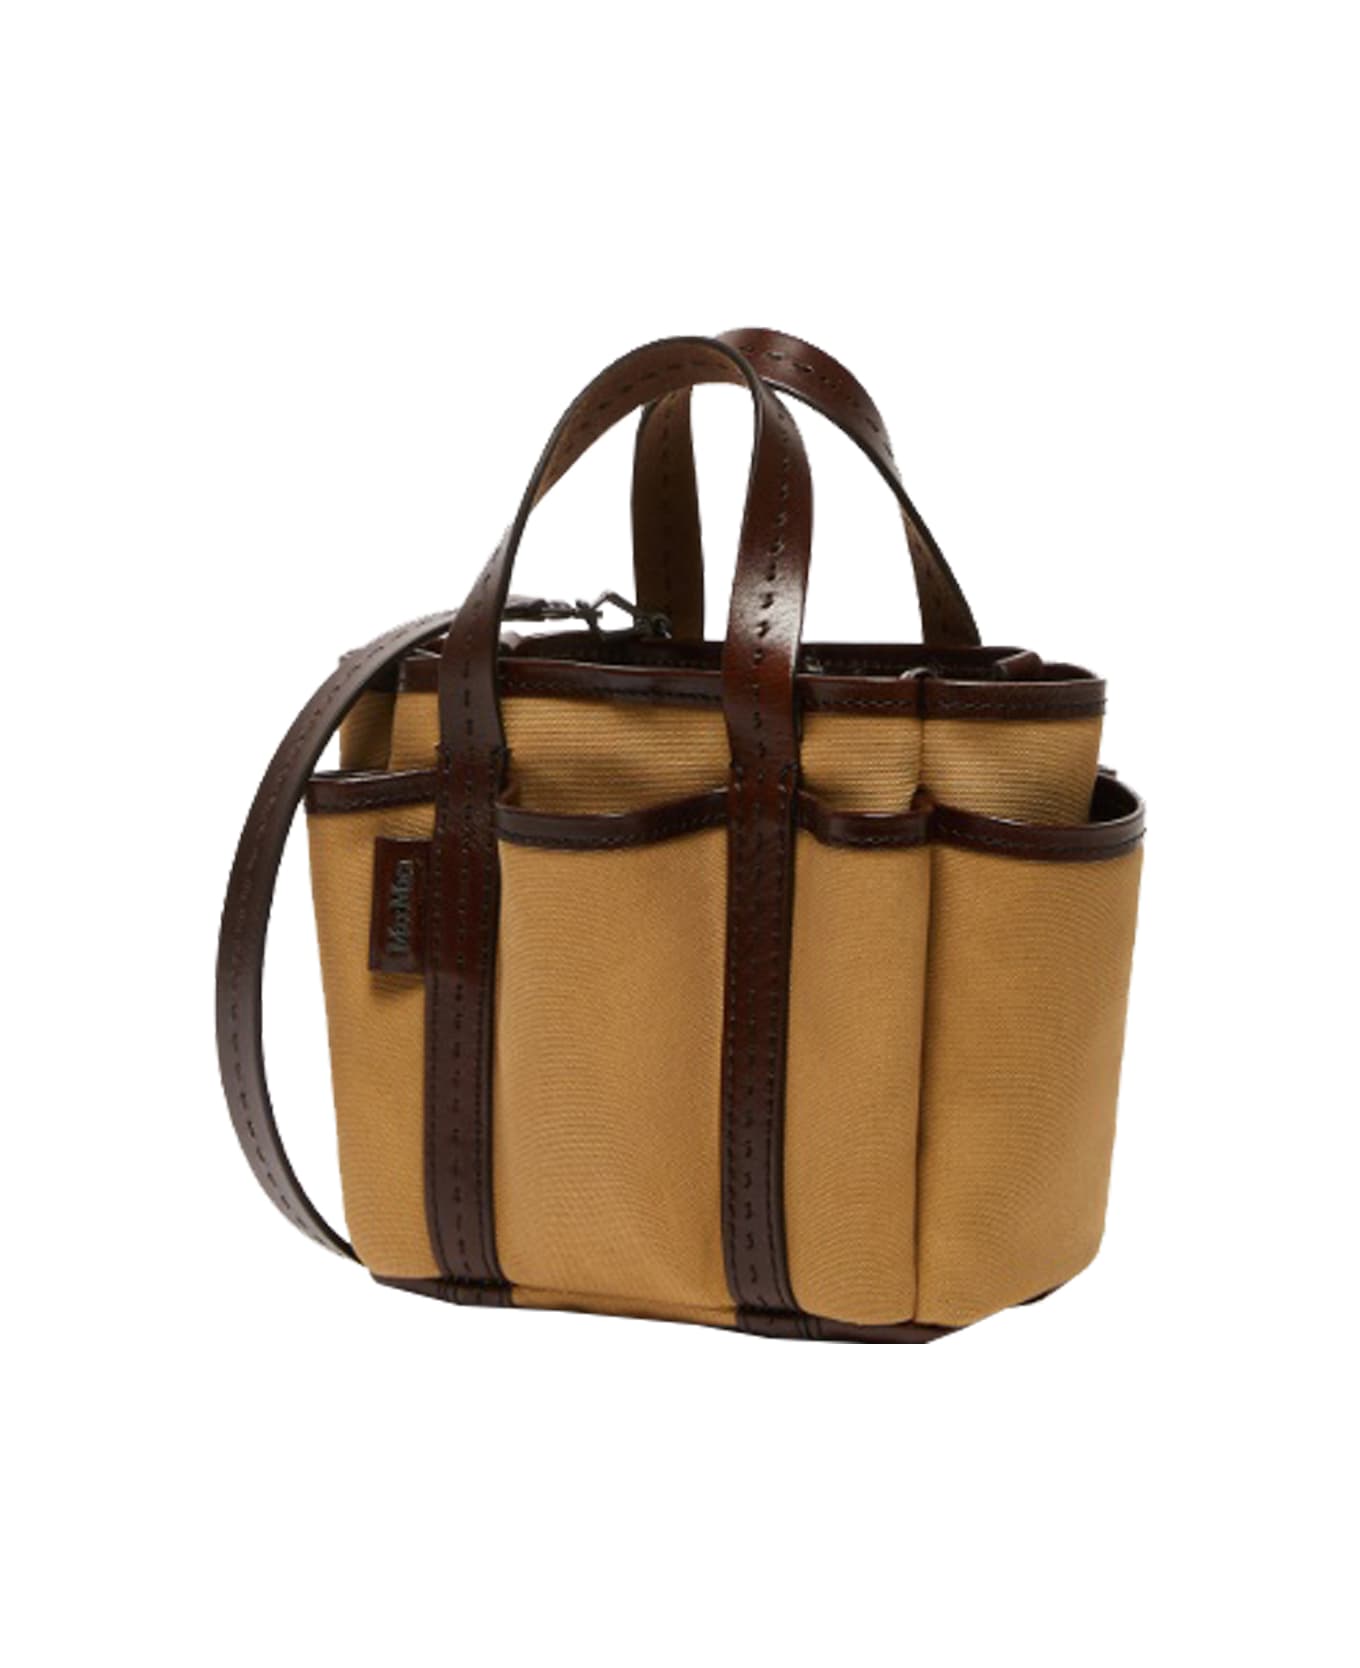 Max Mara ''gardencabasxs'' Shoulder Bag - Leather Brown トートバッグ